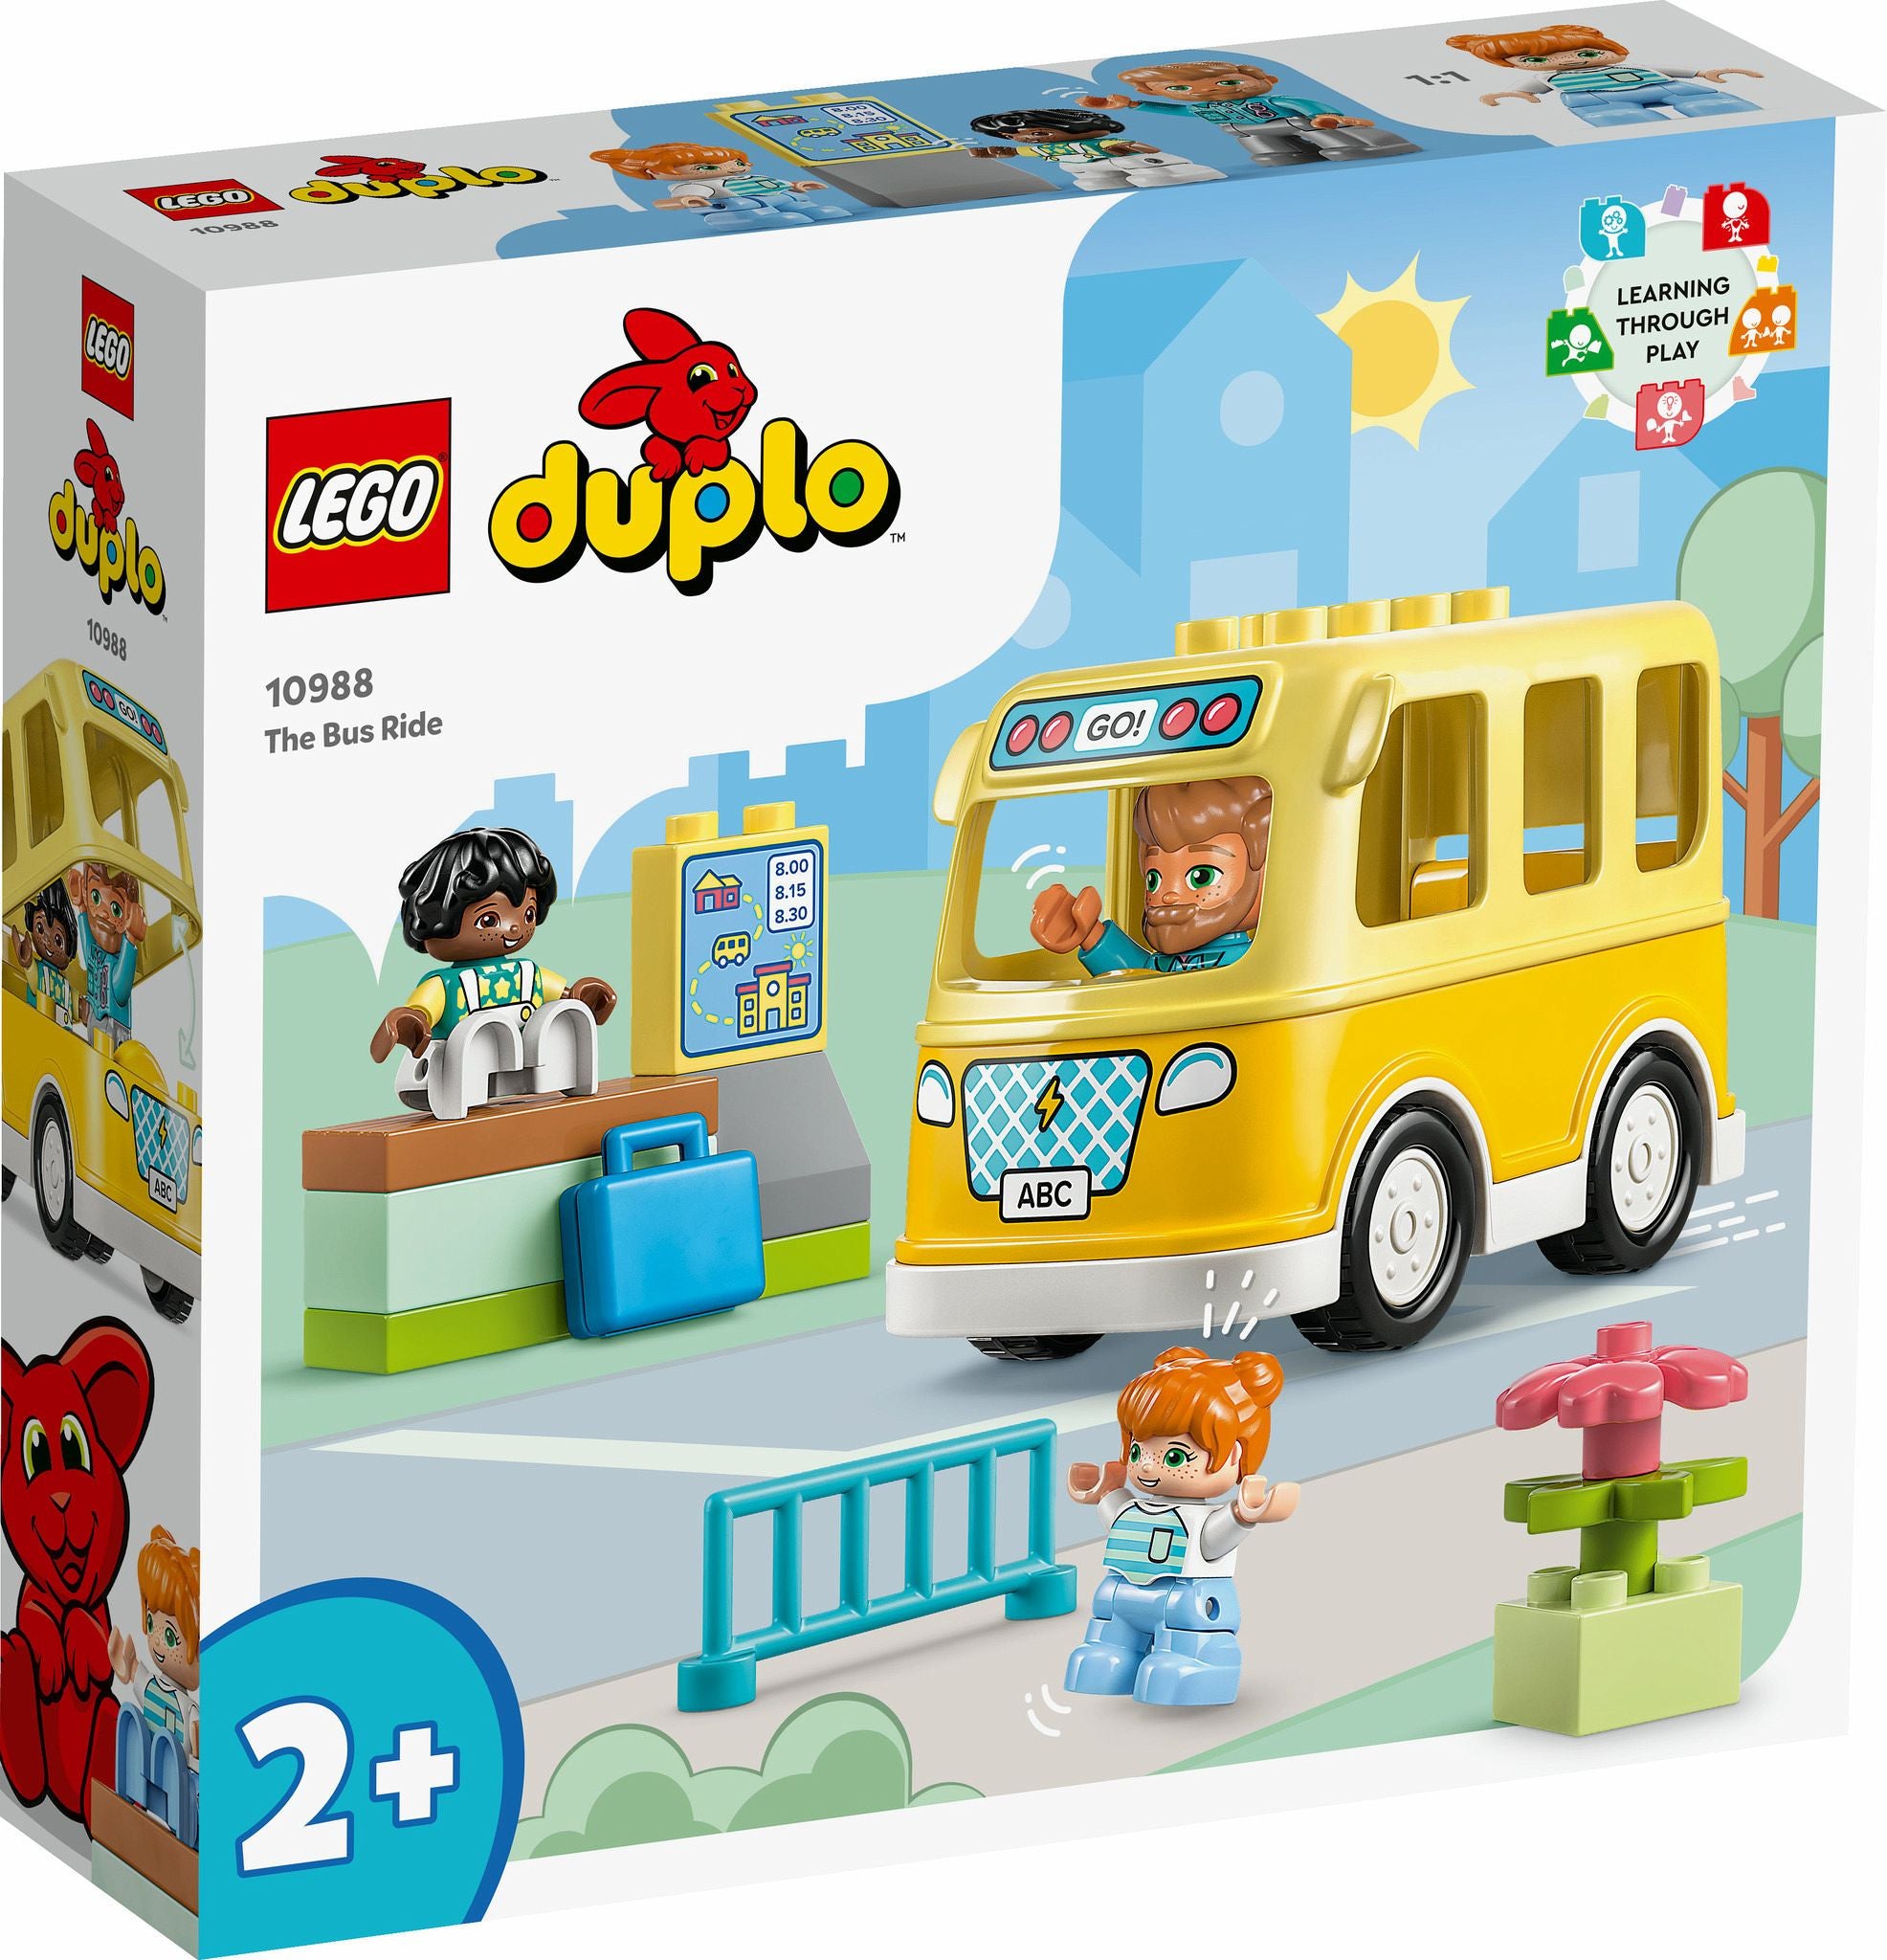 LEGO Duplo Die Busfahrt 10988  - LEGO Sets im Wert von 20 € kaufen, dazu gibt es eine Brotdose Gratis